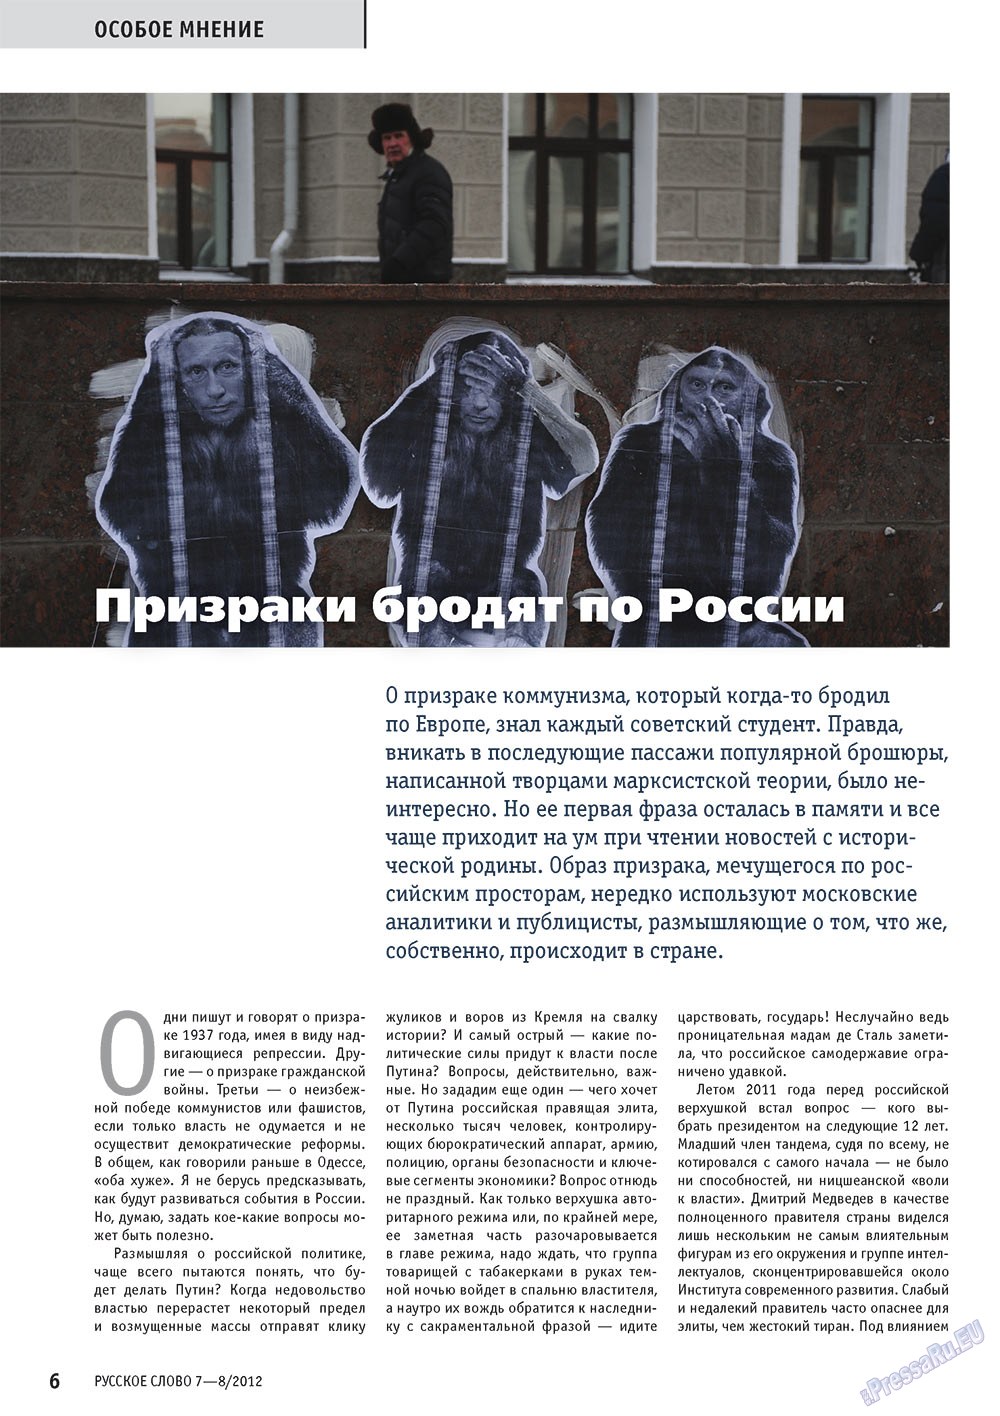 Русское слово, журнал. 2012 №7 стр.6